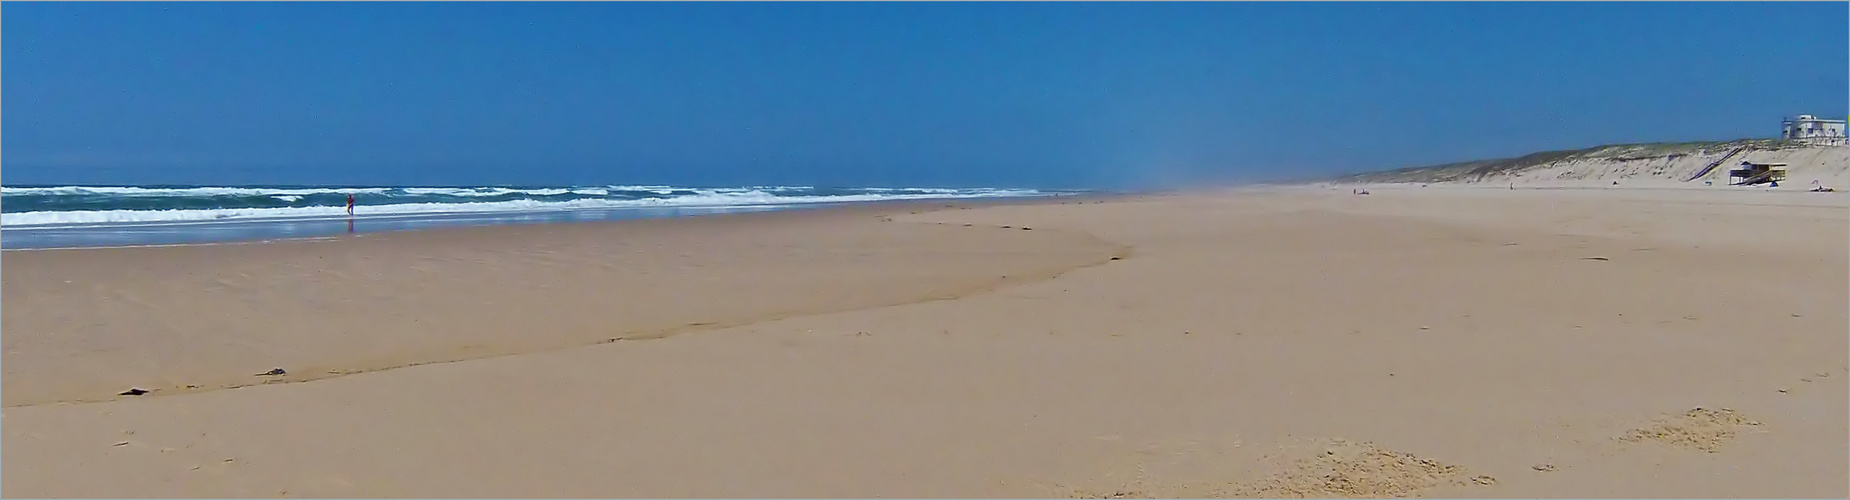 Une plage comme je l’aime -- Mimizan - Lespecier -- Ein Strand, so wie ich ihn gern habe